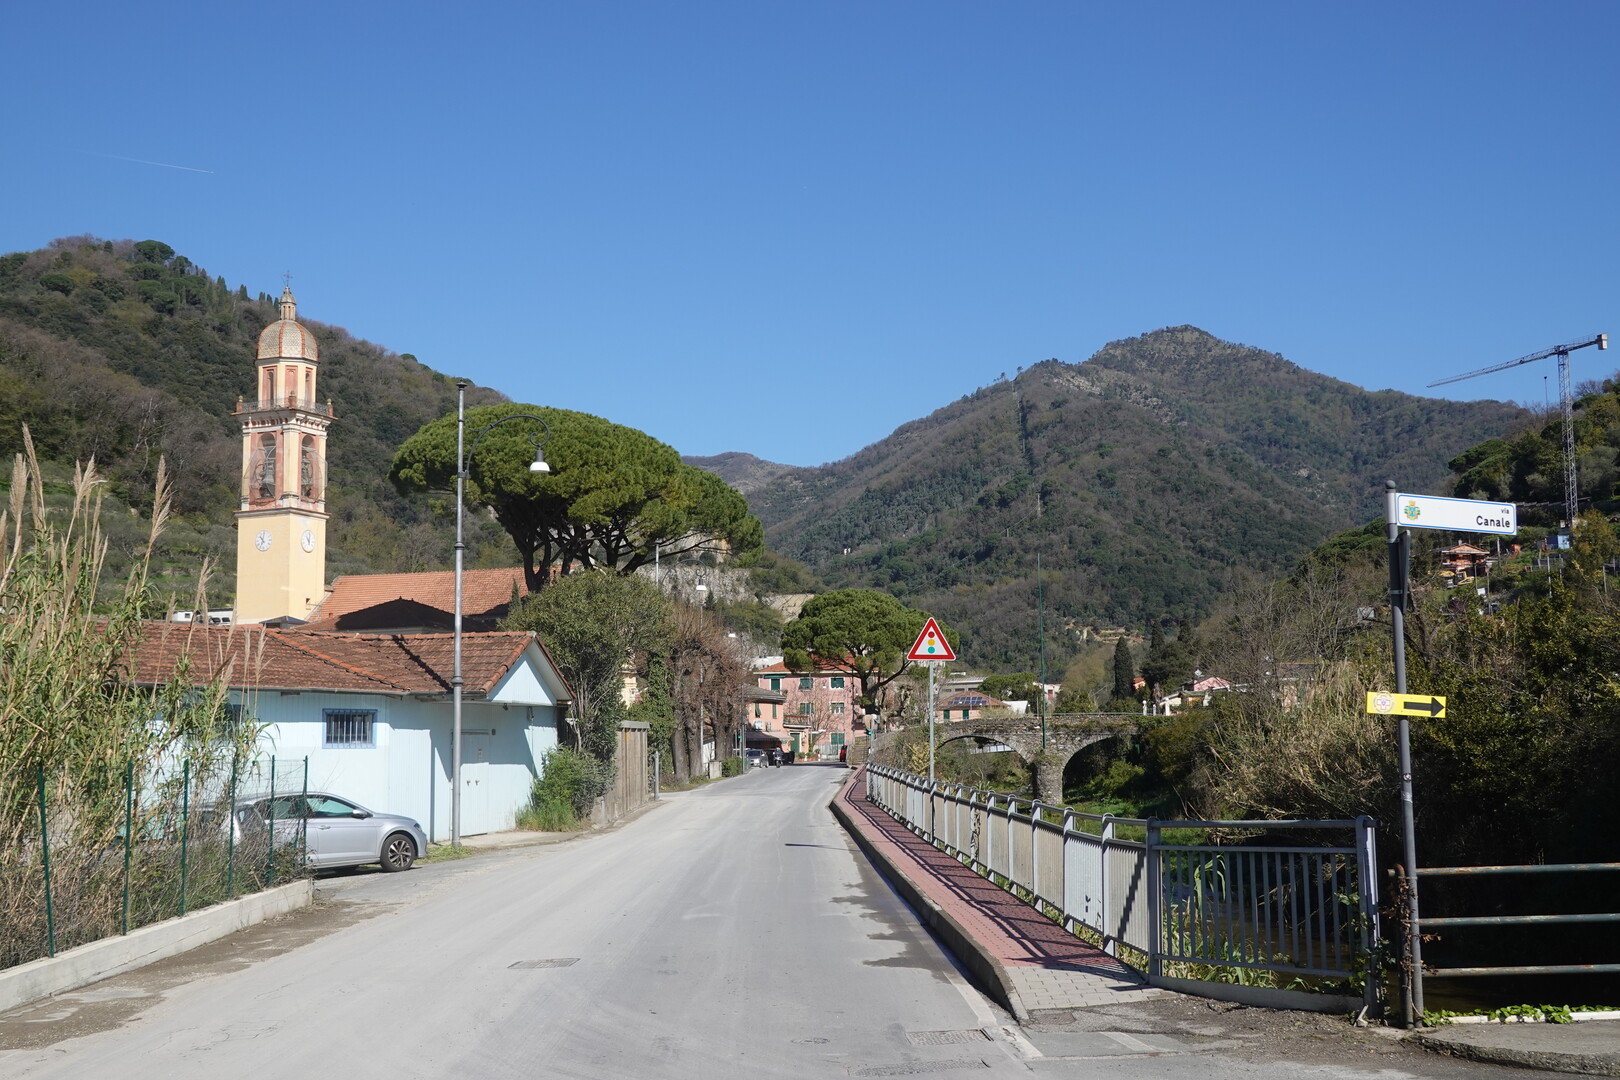 Am Autobahnkreisverkehr in Rapallo biegen wir rechts ab.